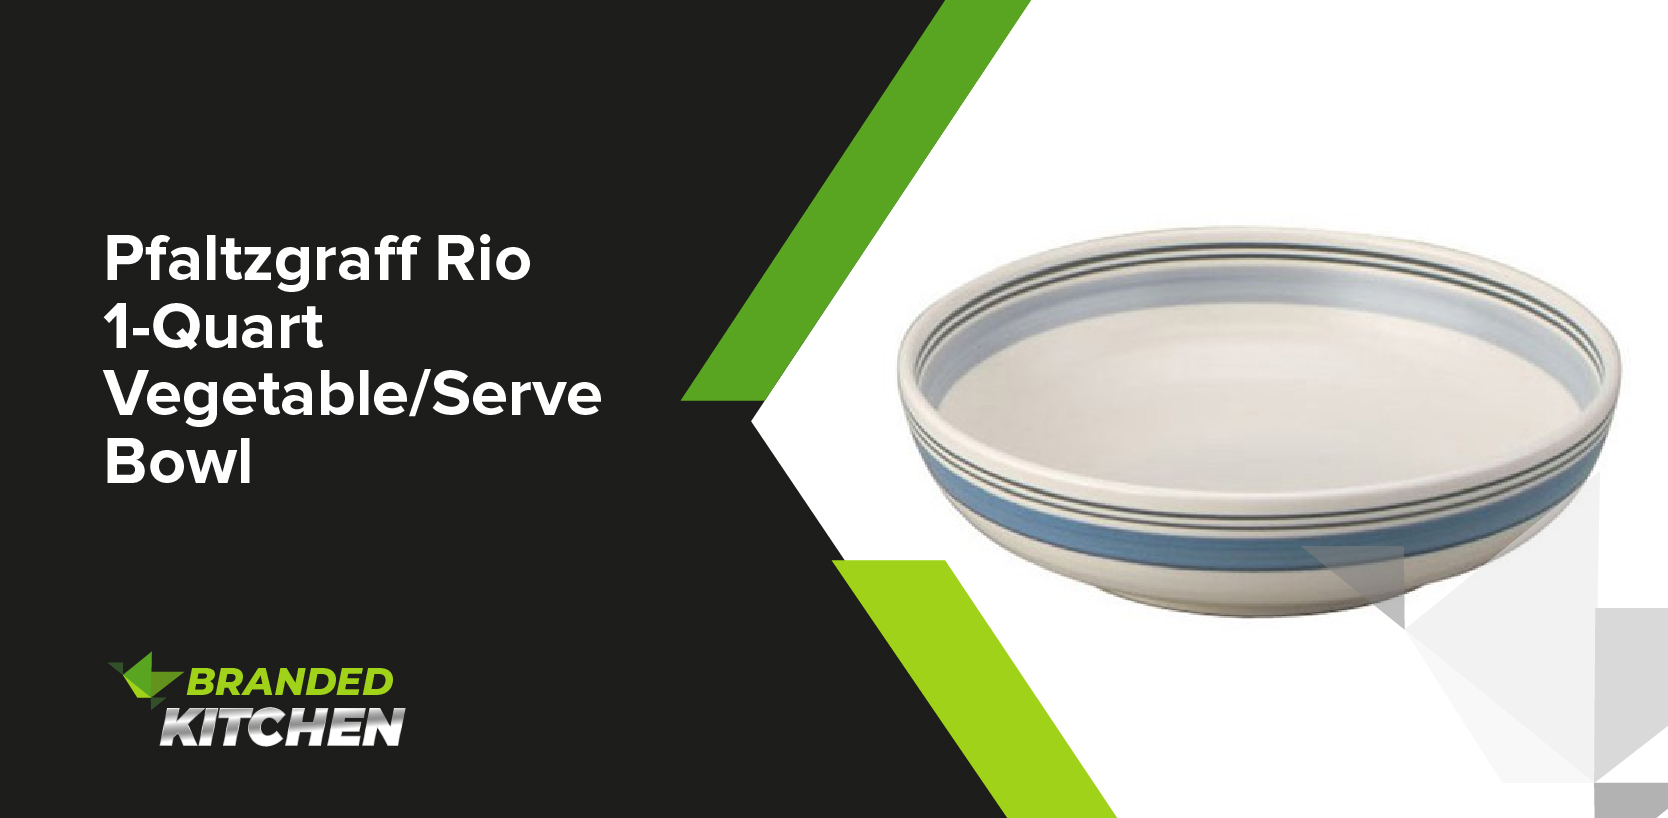 Pfaltzgraff Rio 1-Quart Vegetable/Serve Bowl